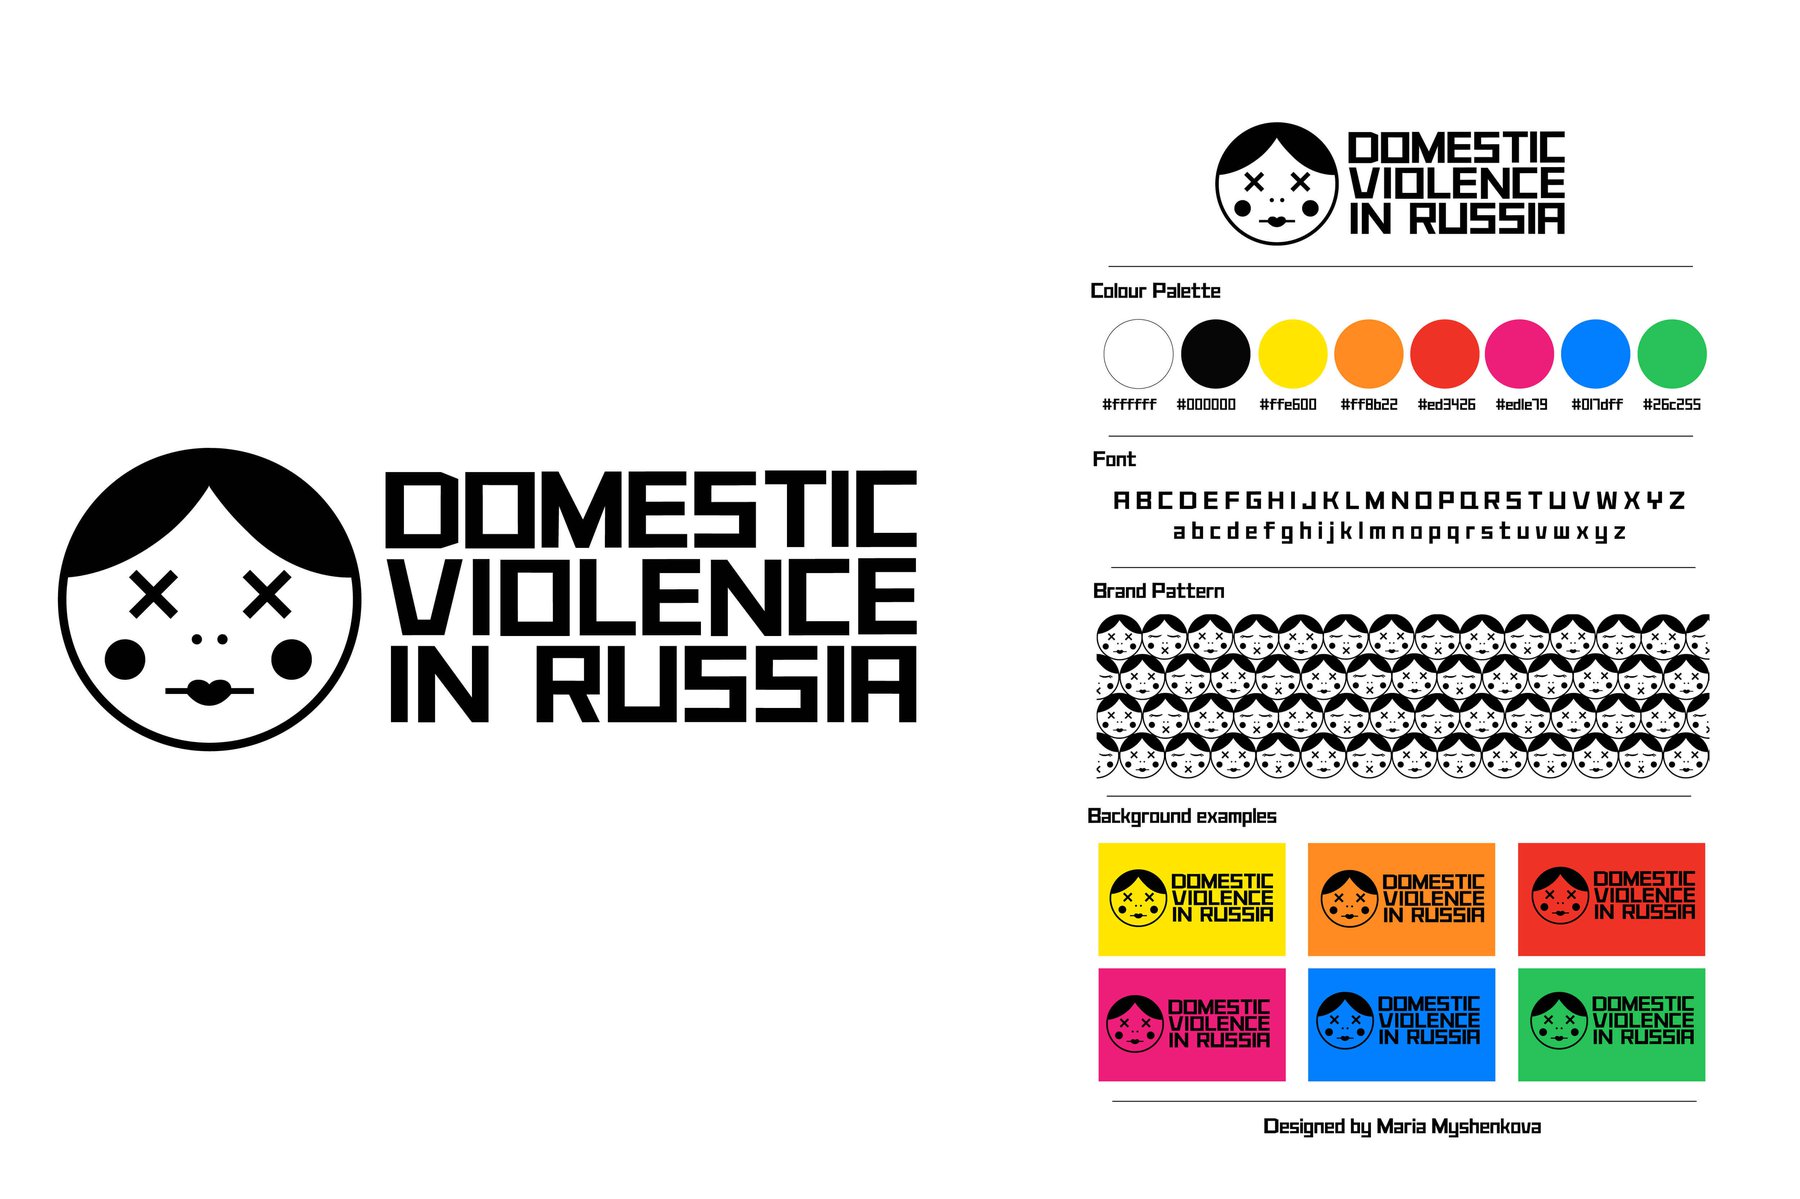 Domestic violence in Russia logo.jpg